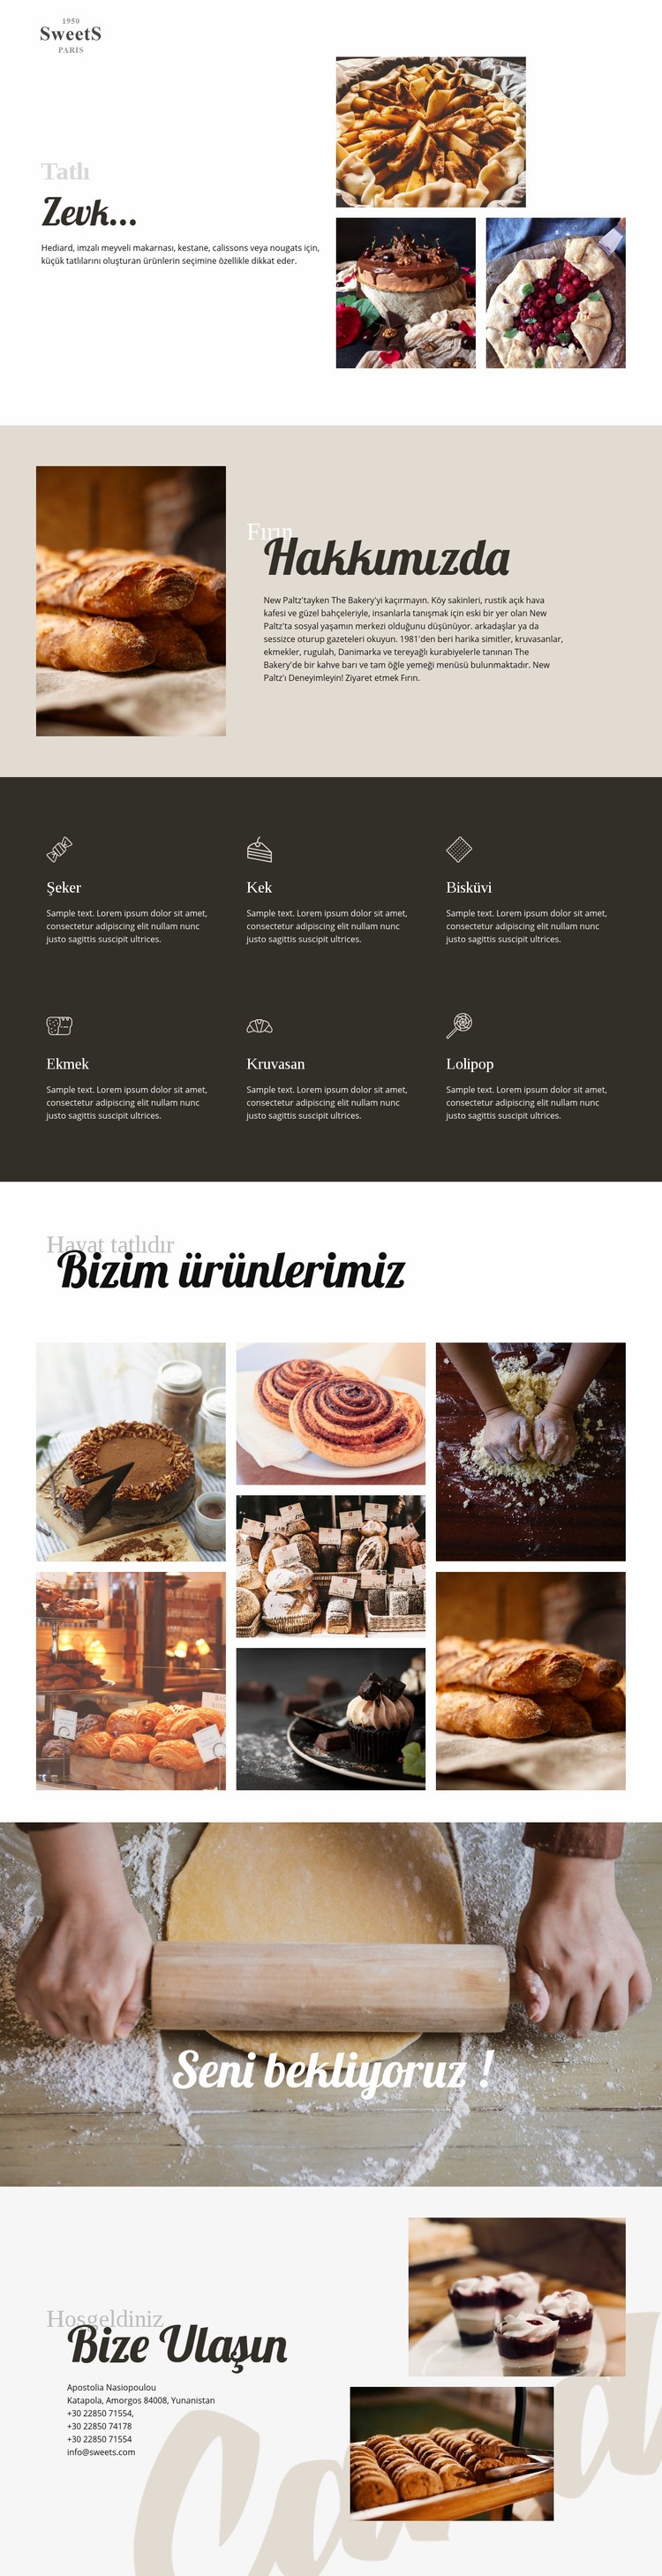 Pastalar ve pişirme yemekleri Web sitesi tasarımı